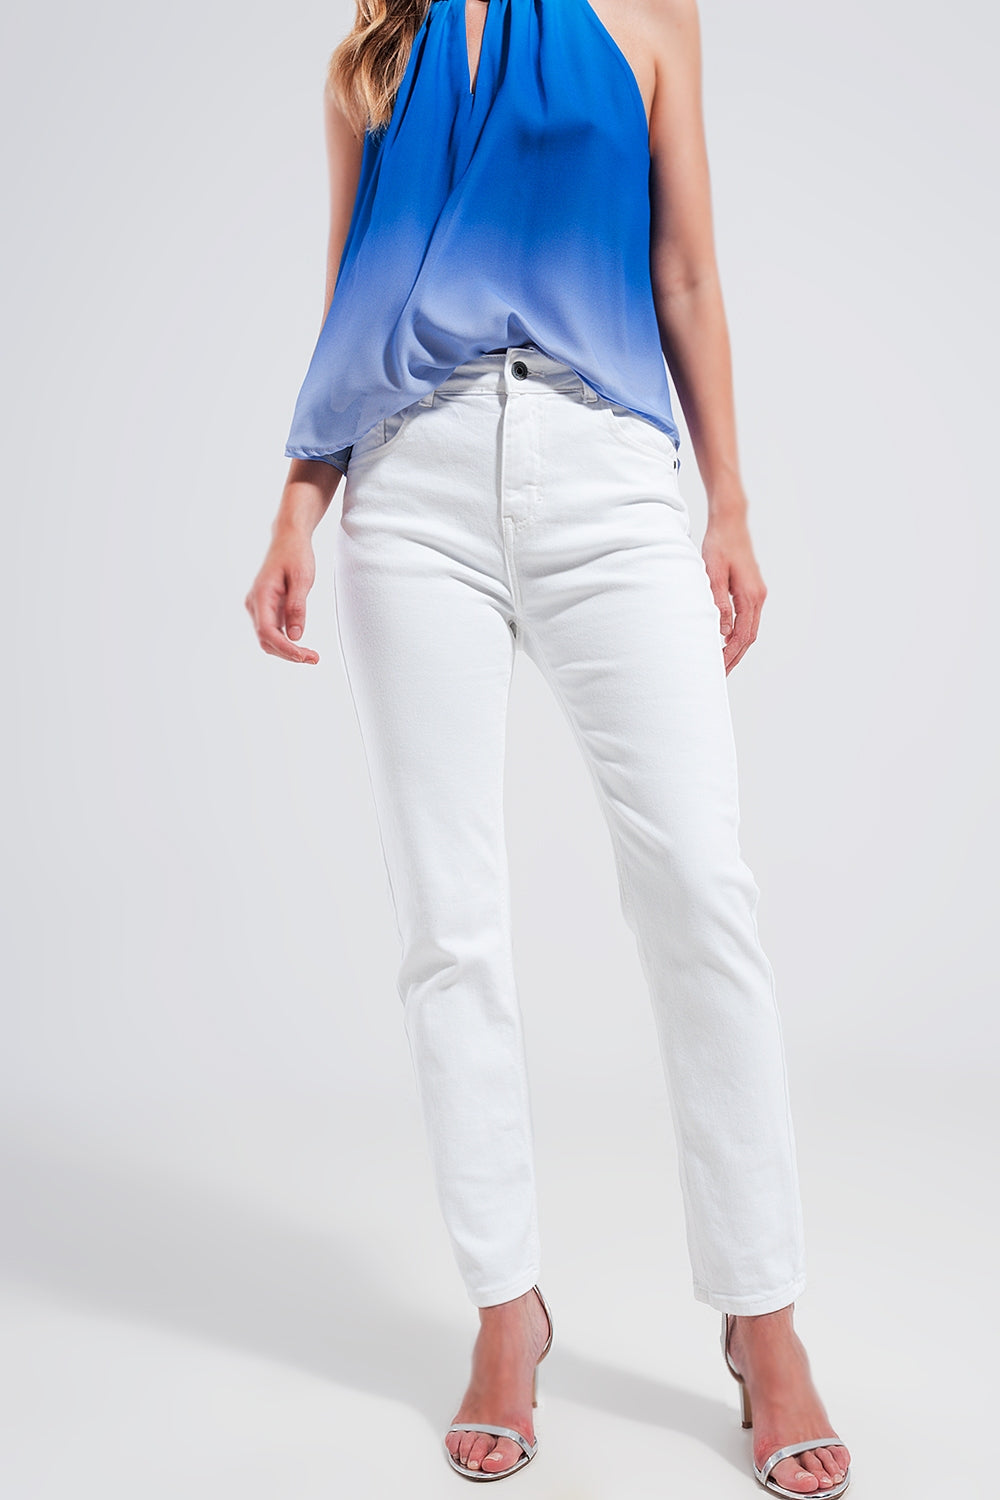 Q2 Jeans skinny in cotone elasticizzato bianco